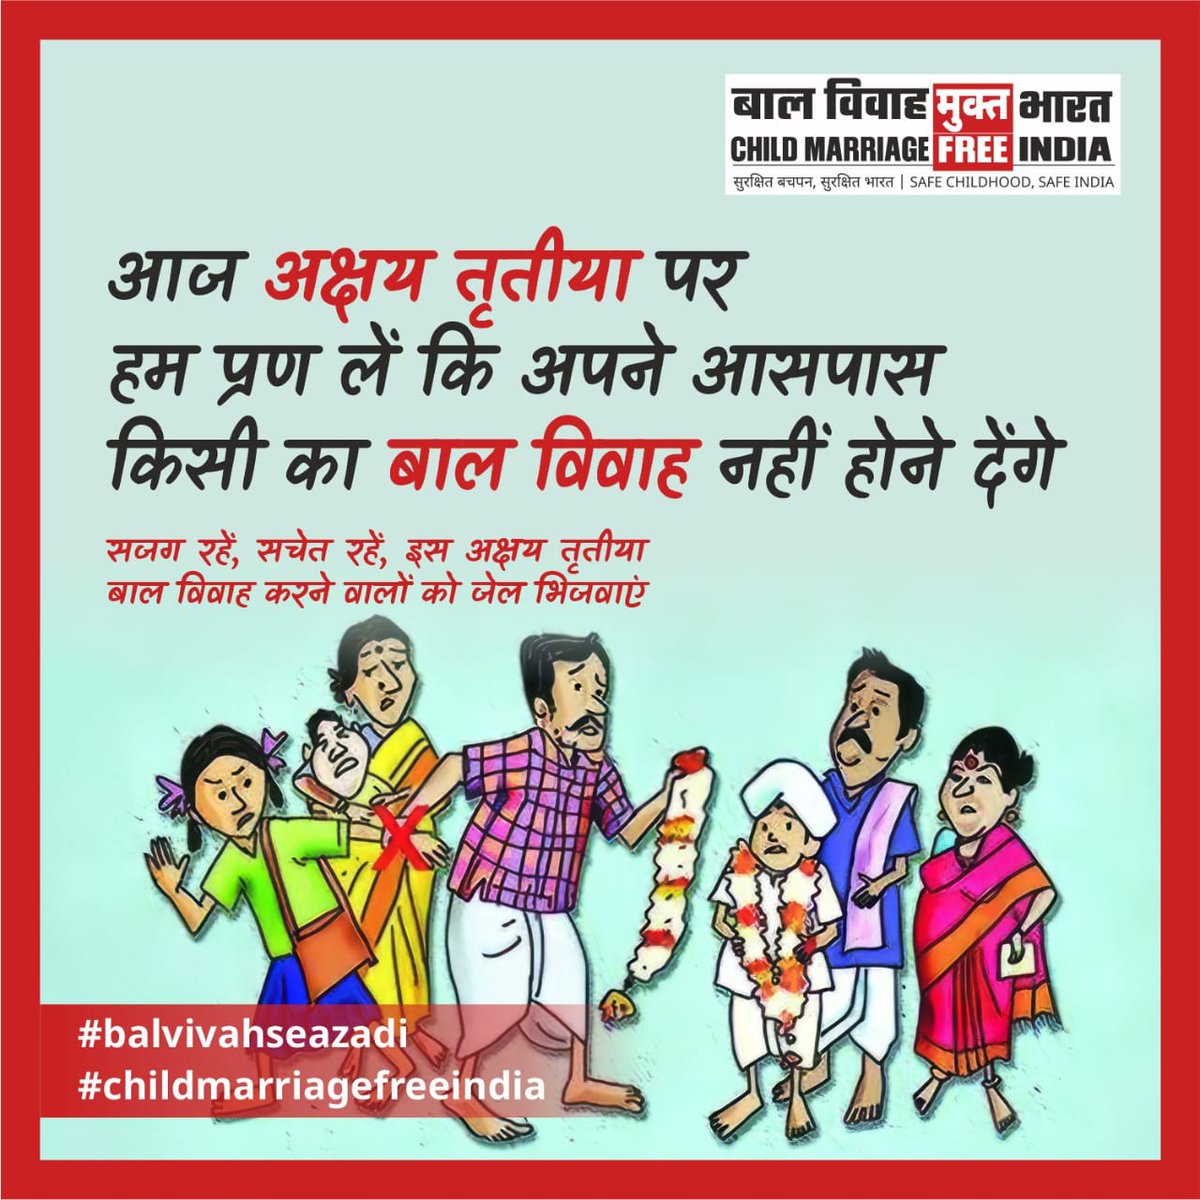 आज अक्षय तृतीया है। विवाह के लिए शुभ माने जाने वाले इस दिन हजारों बच्चों को बाल विवाह के नर्क में झोंक दिया जाता है। यह अत्याचार बंद होना चाहिए। इस अक्षय तृतीया मासूम बेटी की विदाई नहीं बल्कि शुभ मुहूर्त में बाल विवाह जैसी अशुभ प्रथा को विदाई देने का है। #ChildMarriageFreeIndia…